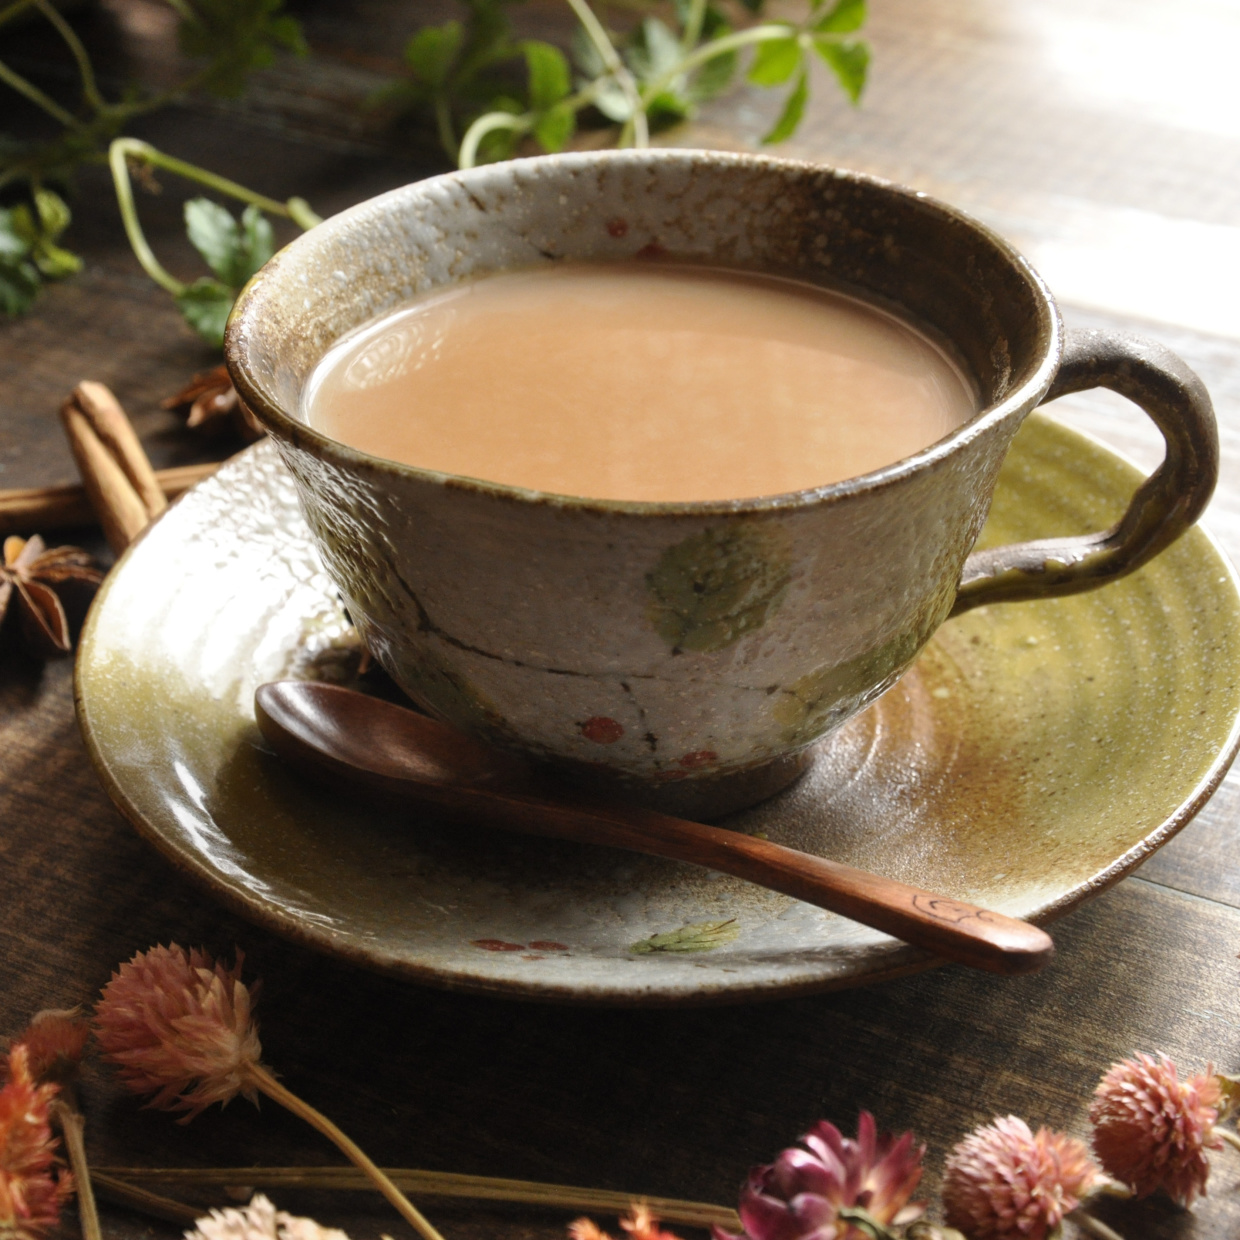  お湯に茶葉を入れるのはNG！「本当においしい濃厚ミルクティー」のいれ方#ミルクティー職人直伝 